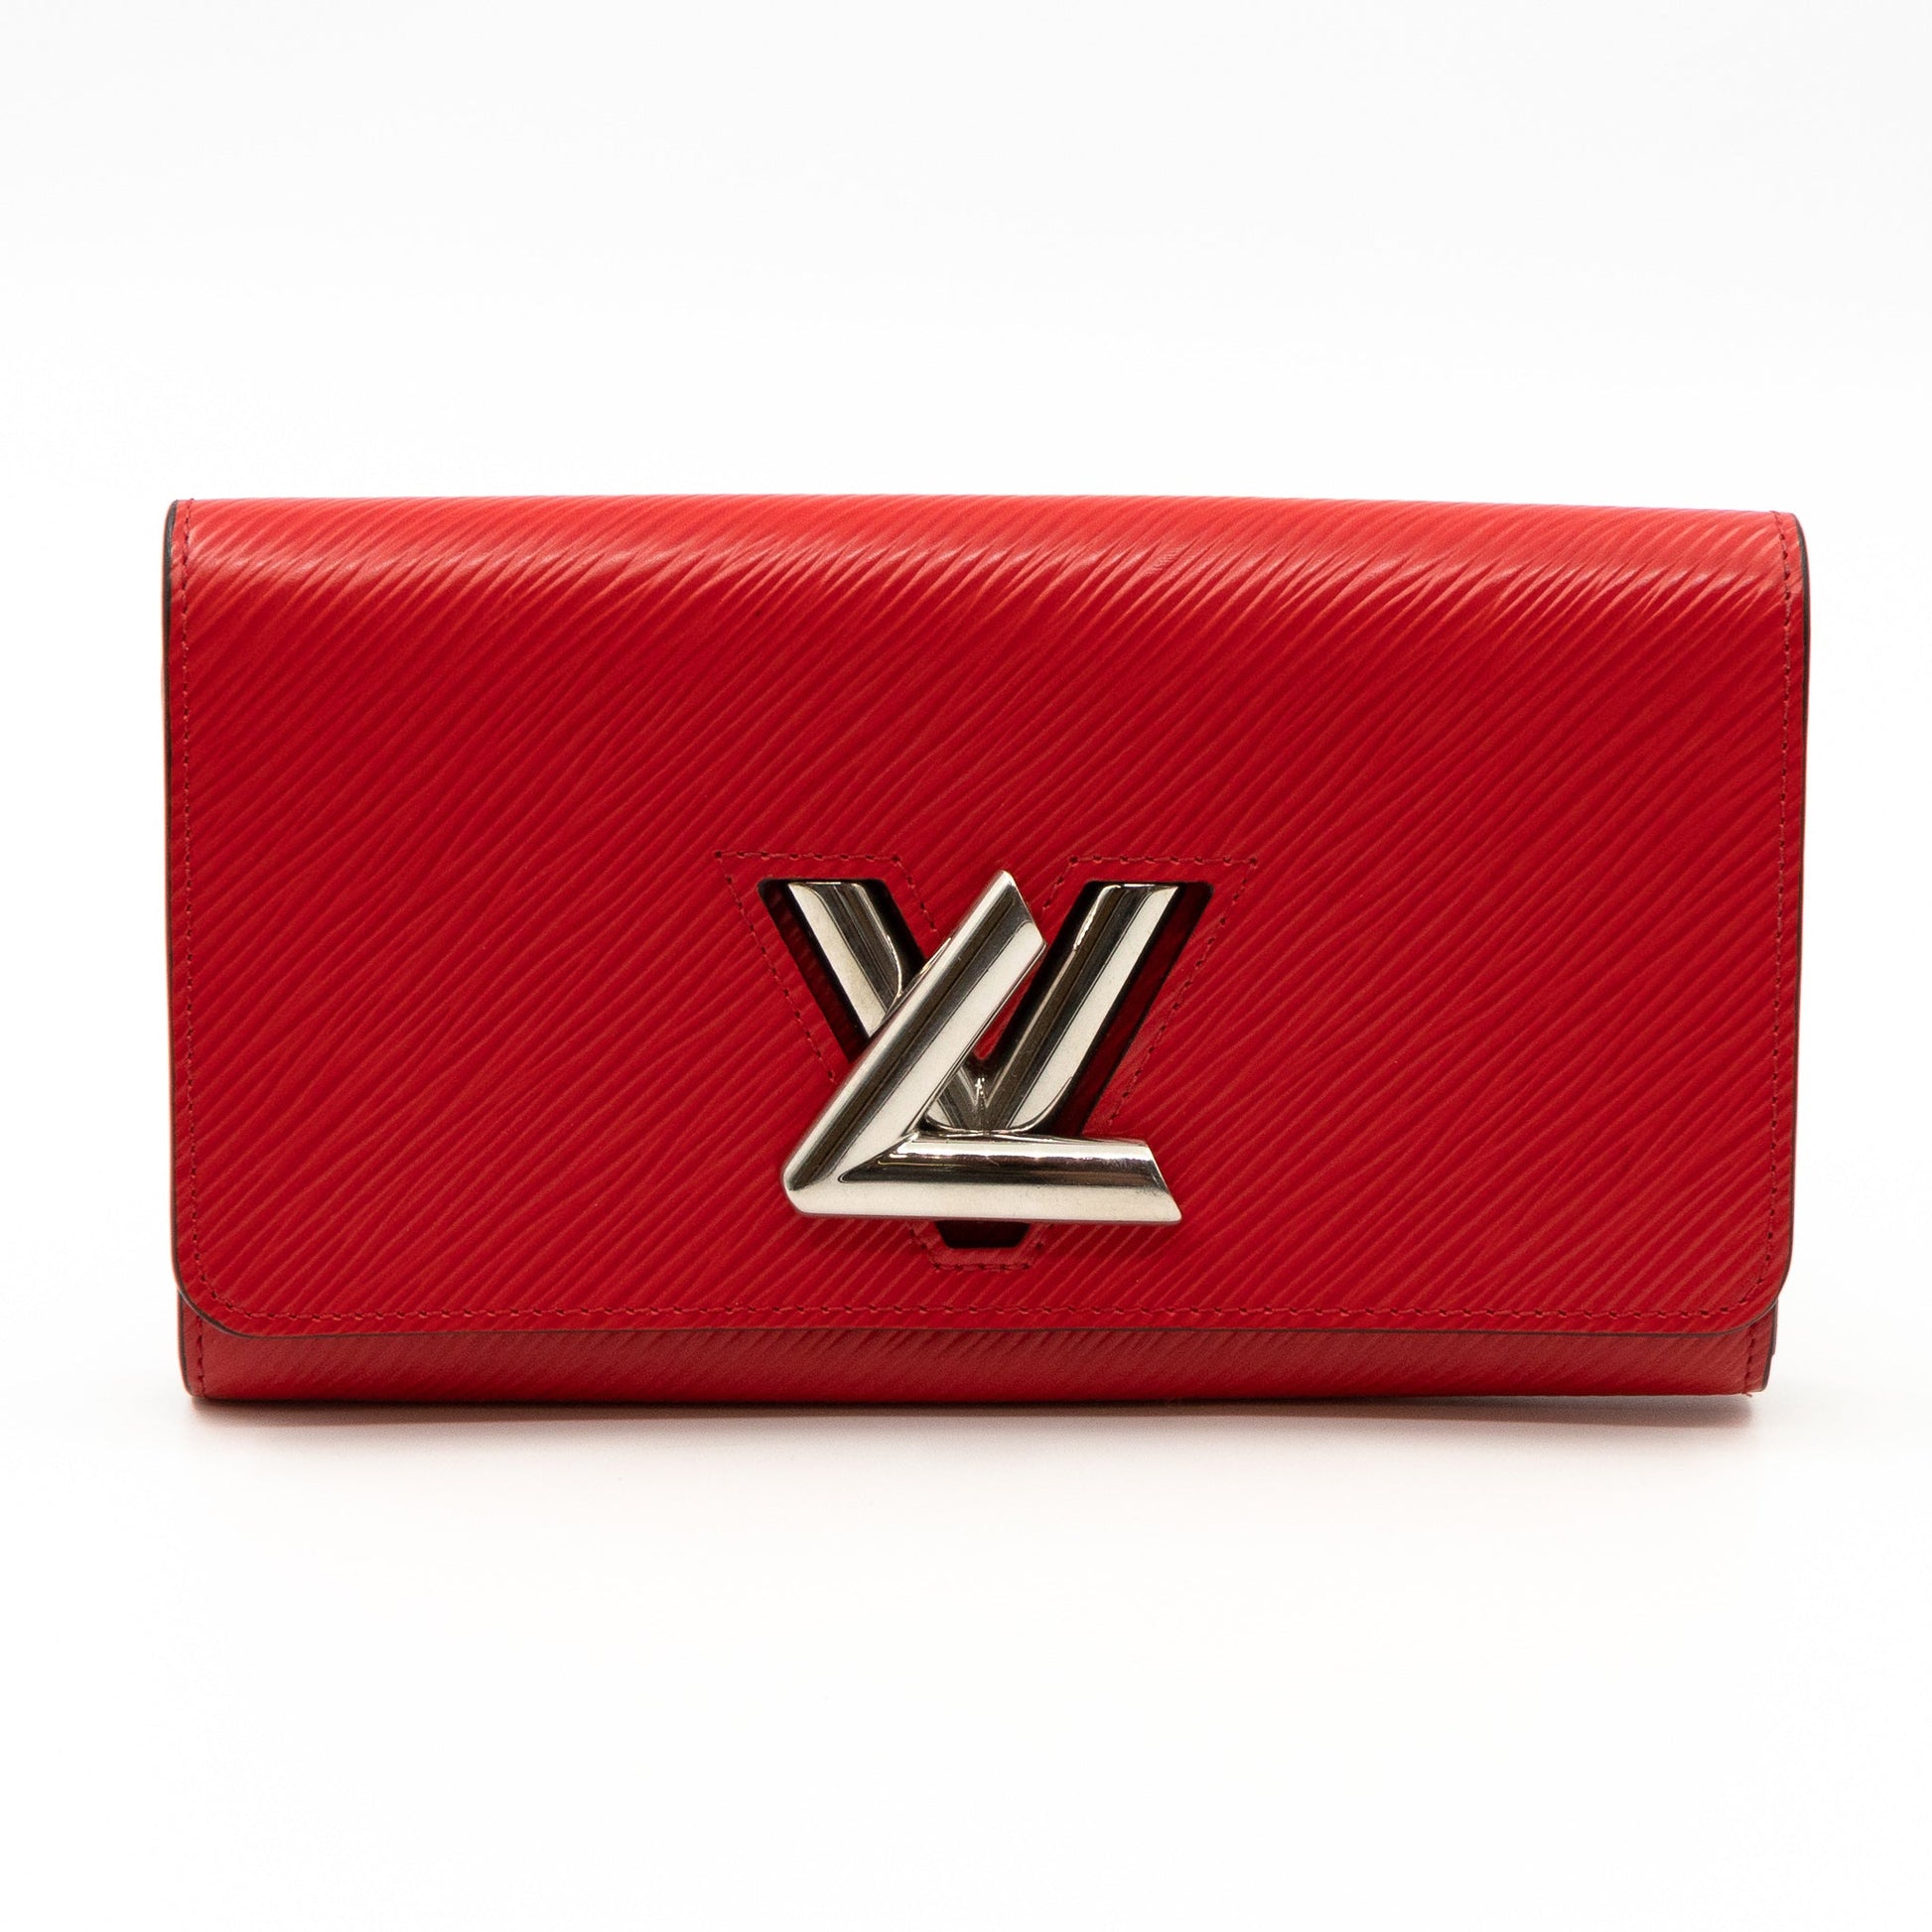 Louis Vuitton, Twist Compact Epi Leather Wallet